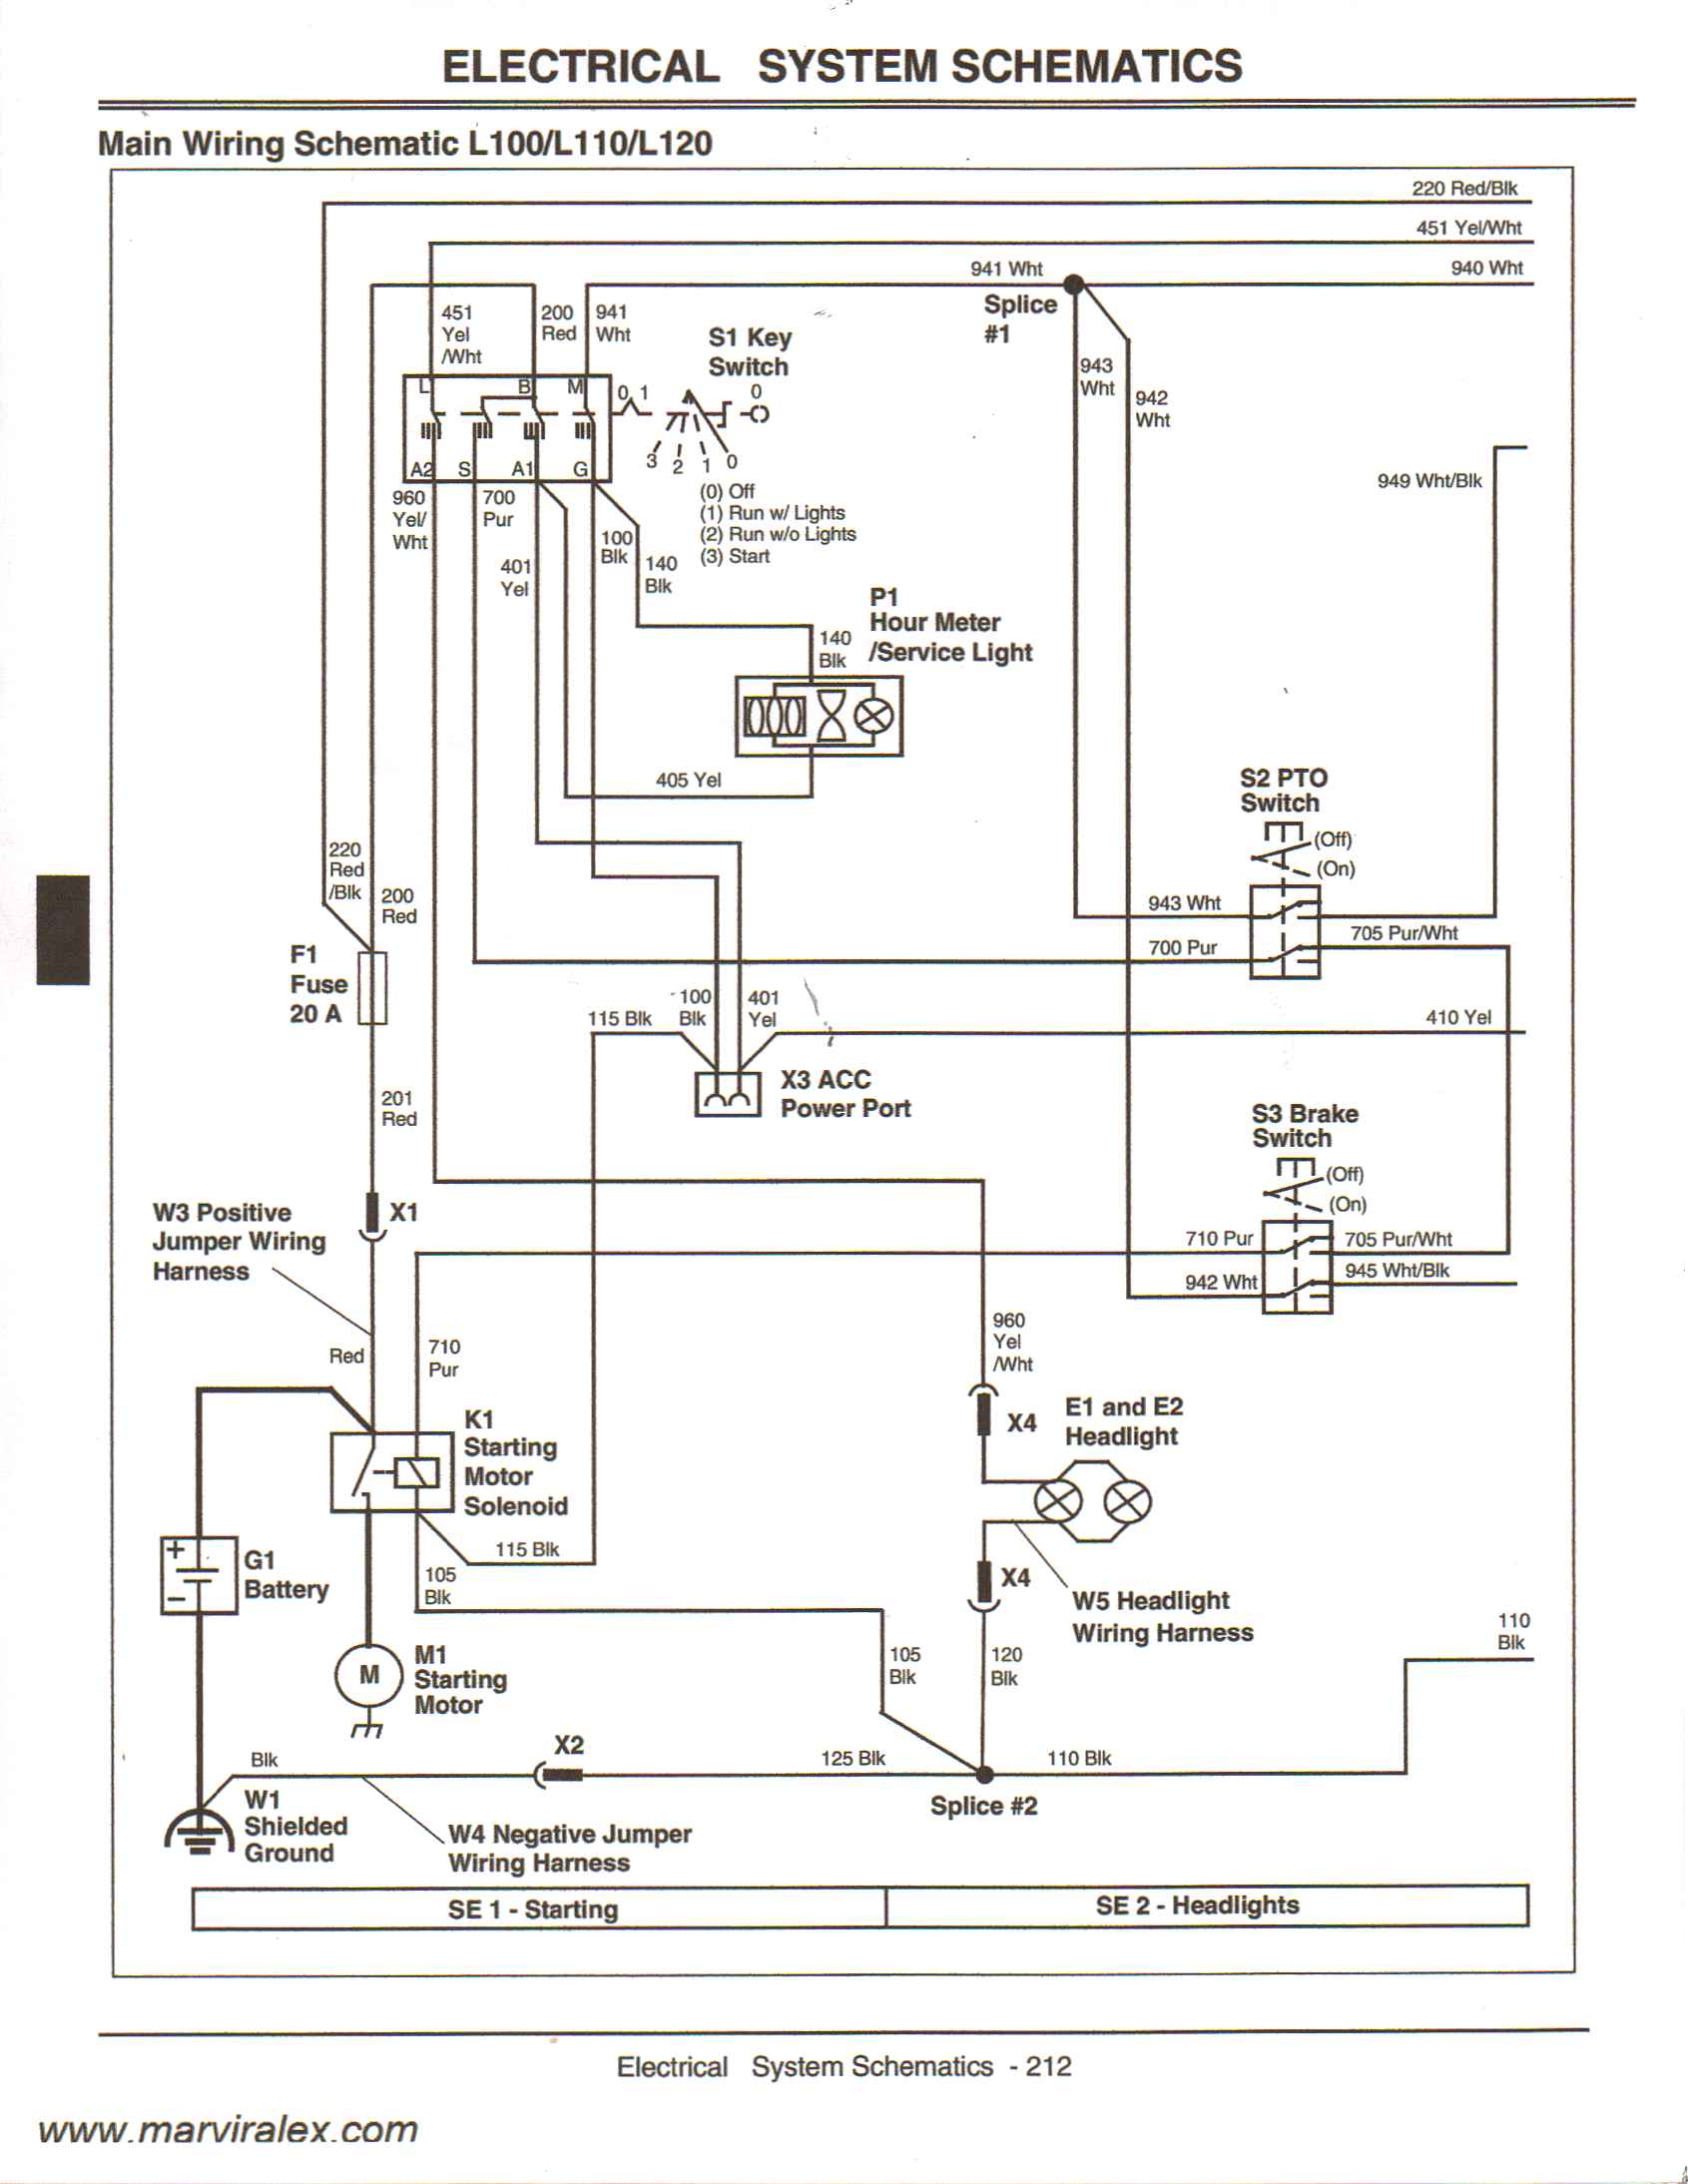 1734 Ow4 Wiring Diagram from schematron.org